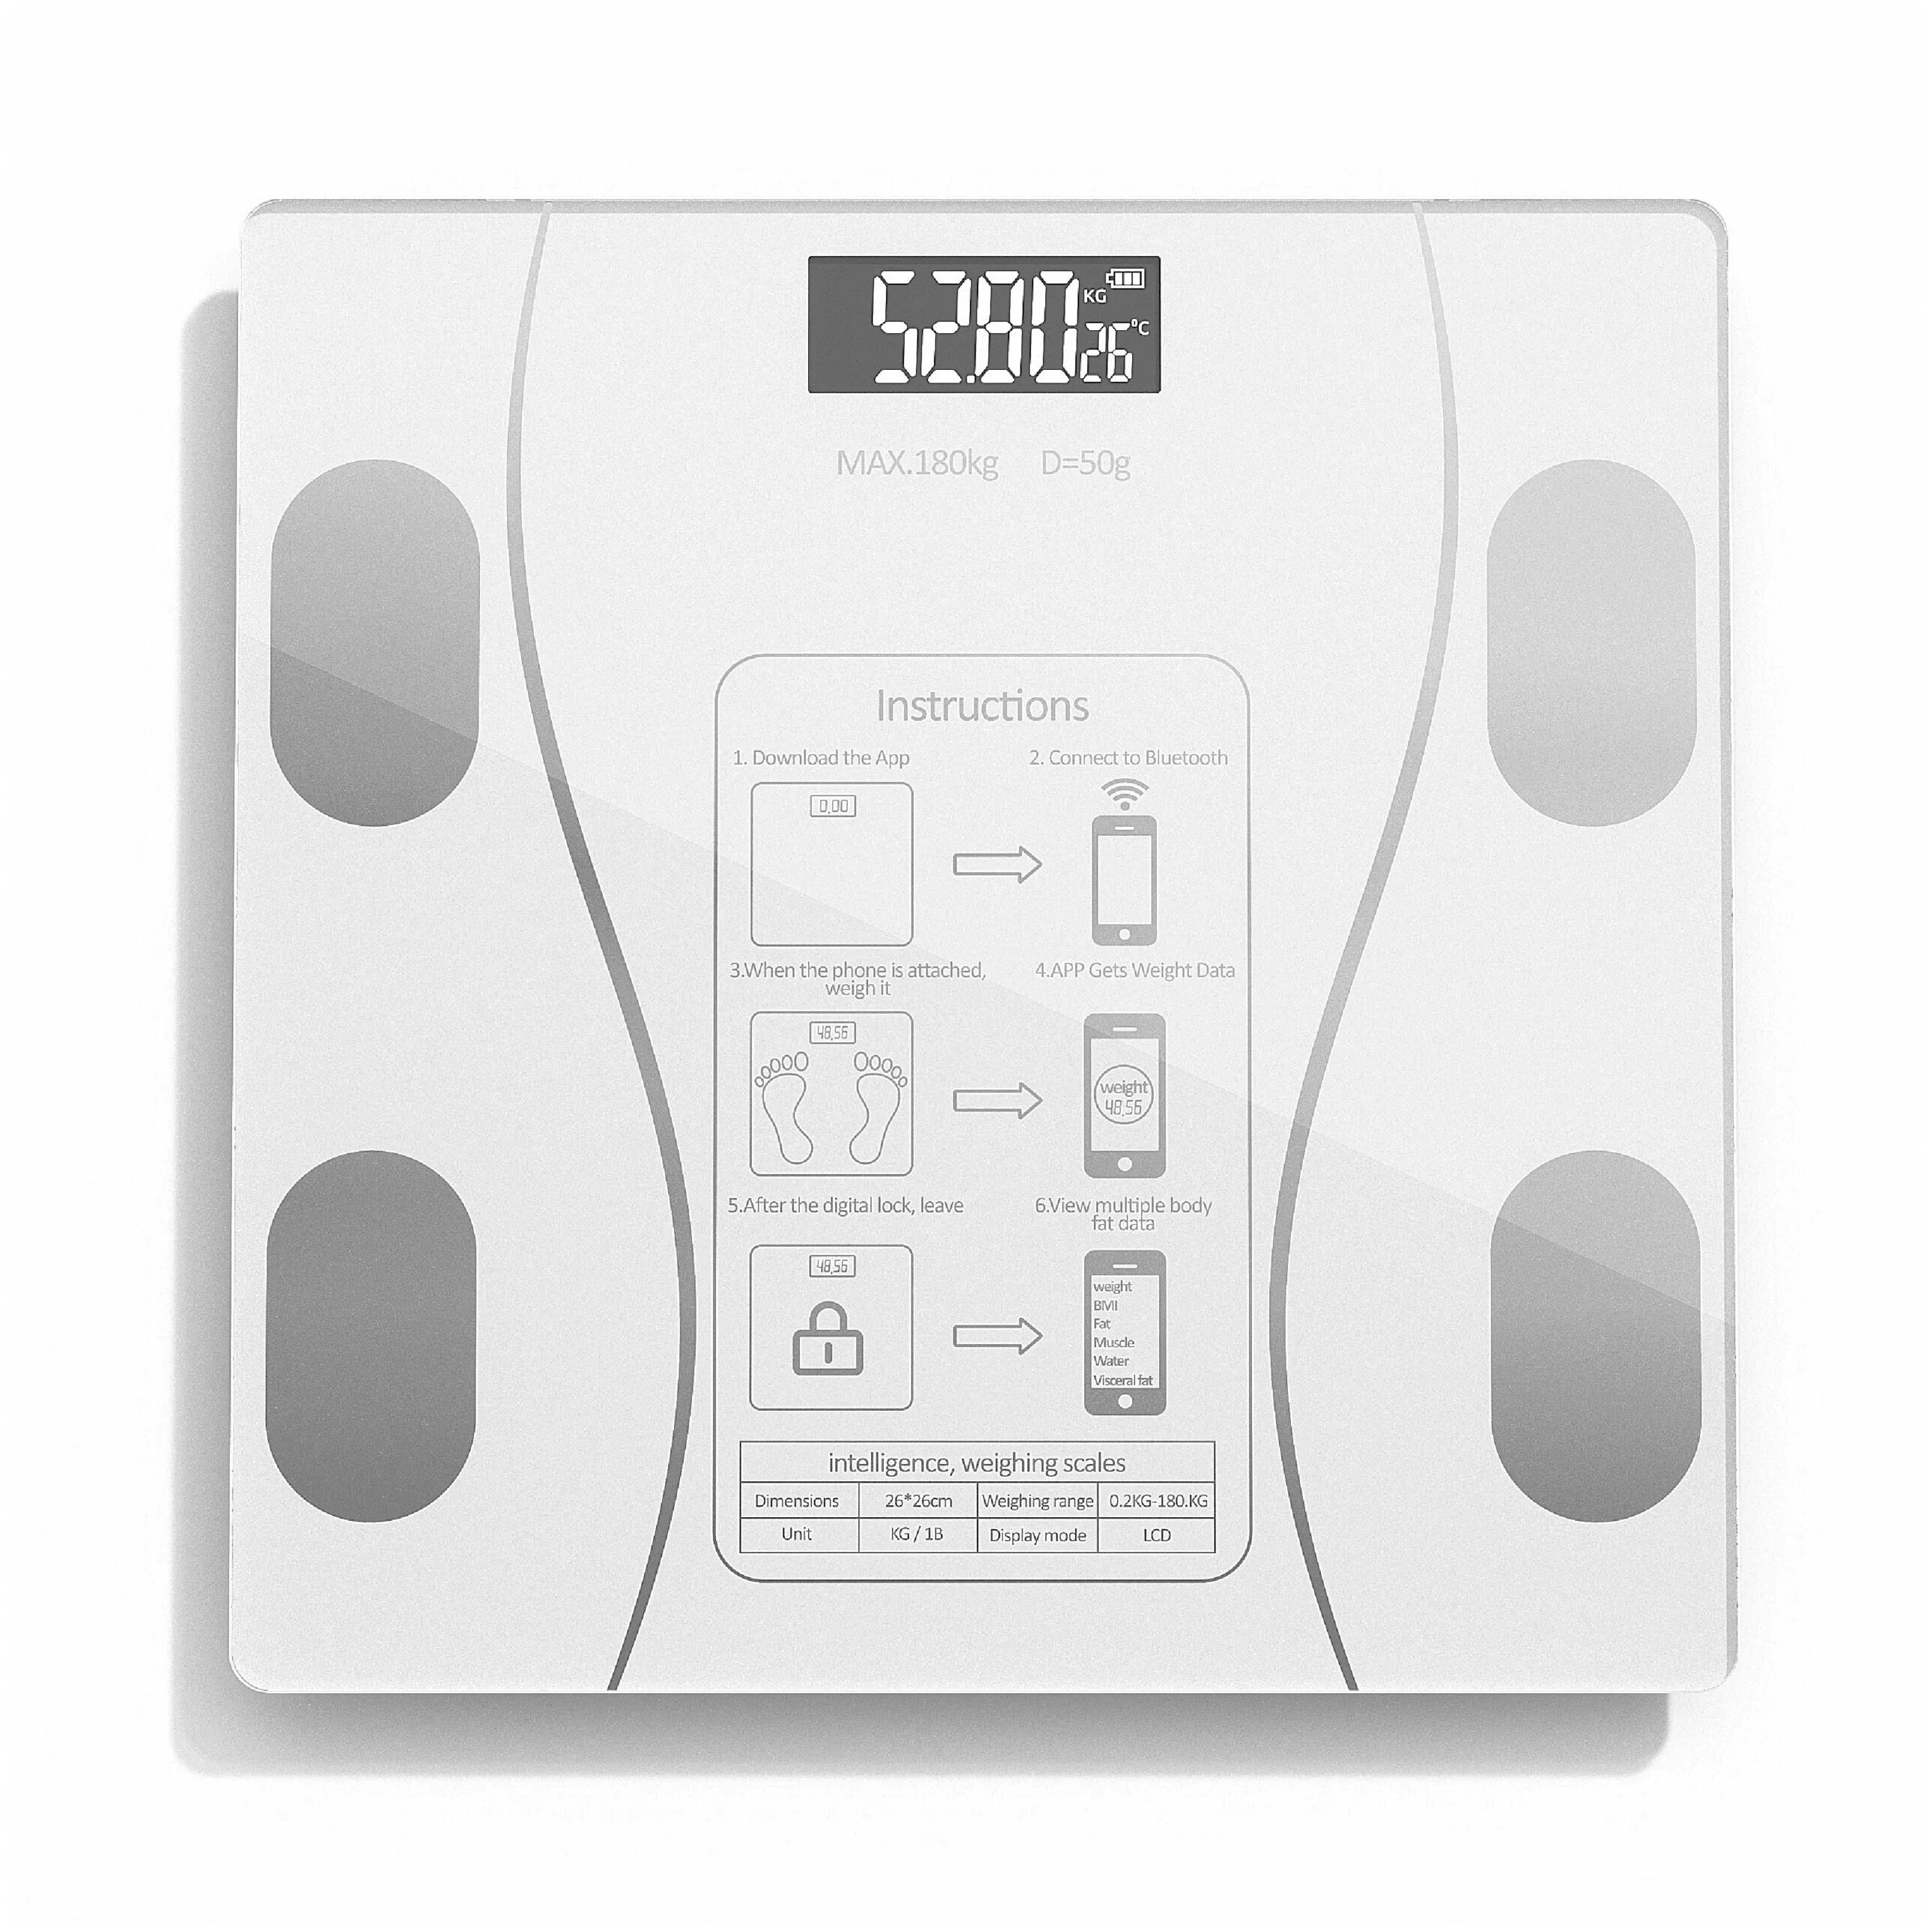 Напольные умные весы c bmi, электронные напольные весы для Xiaomi, iPhone, Android, белые